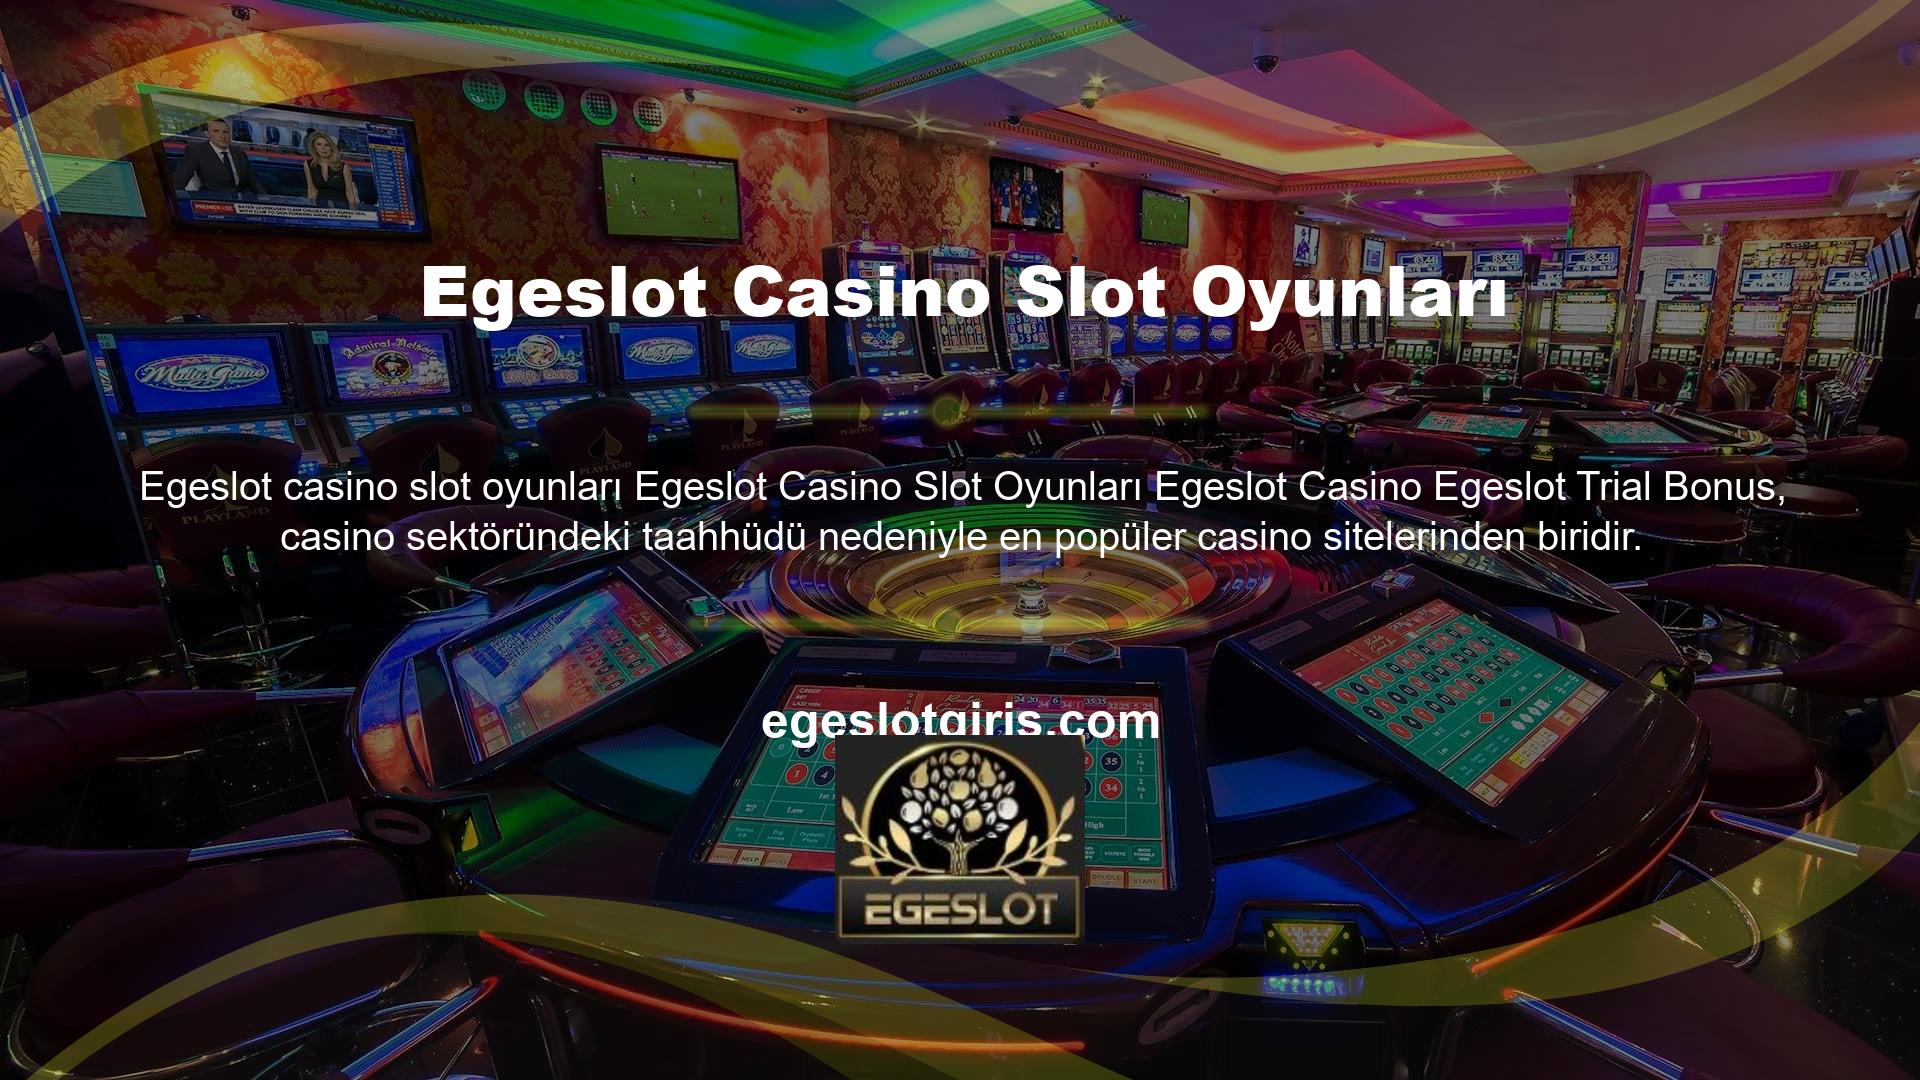 Egeslot hem masaüstü hem de mobil hizmetler sunarak casino sektörünün en kaliteli oyun markalarına hizmet vermeye devam ediyor